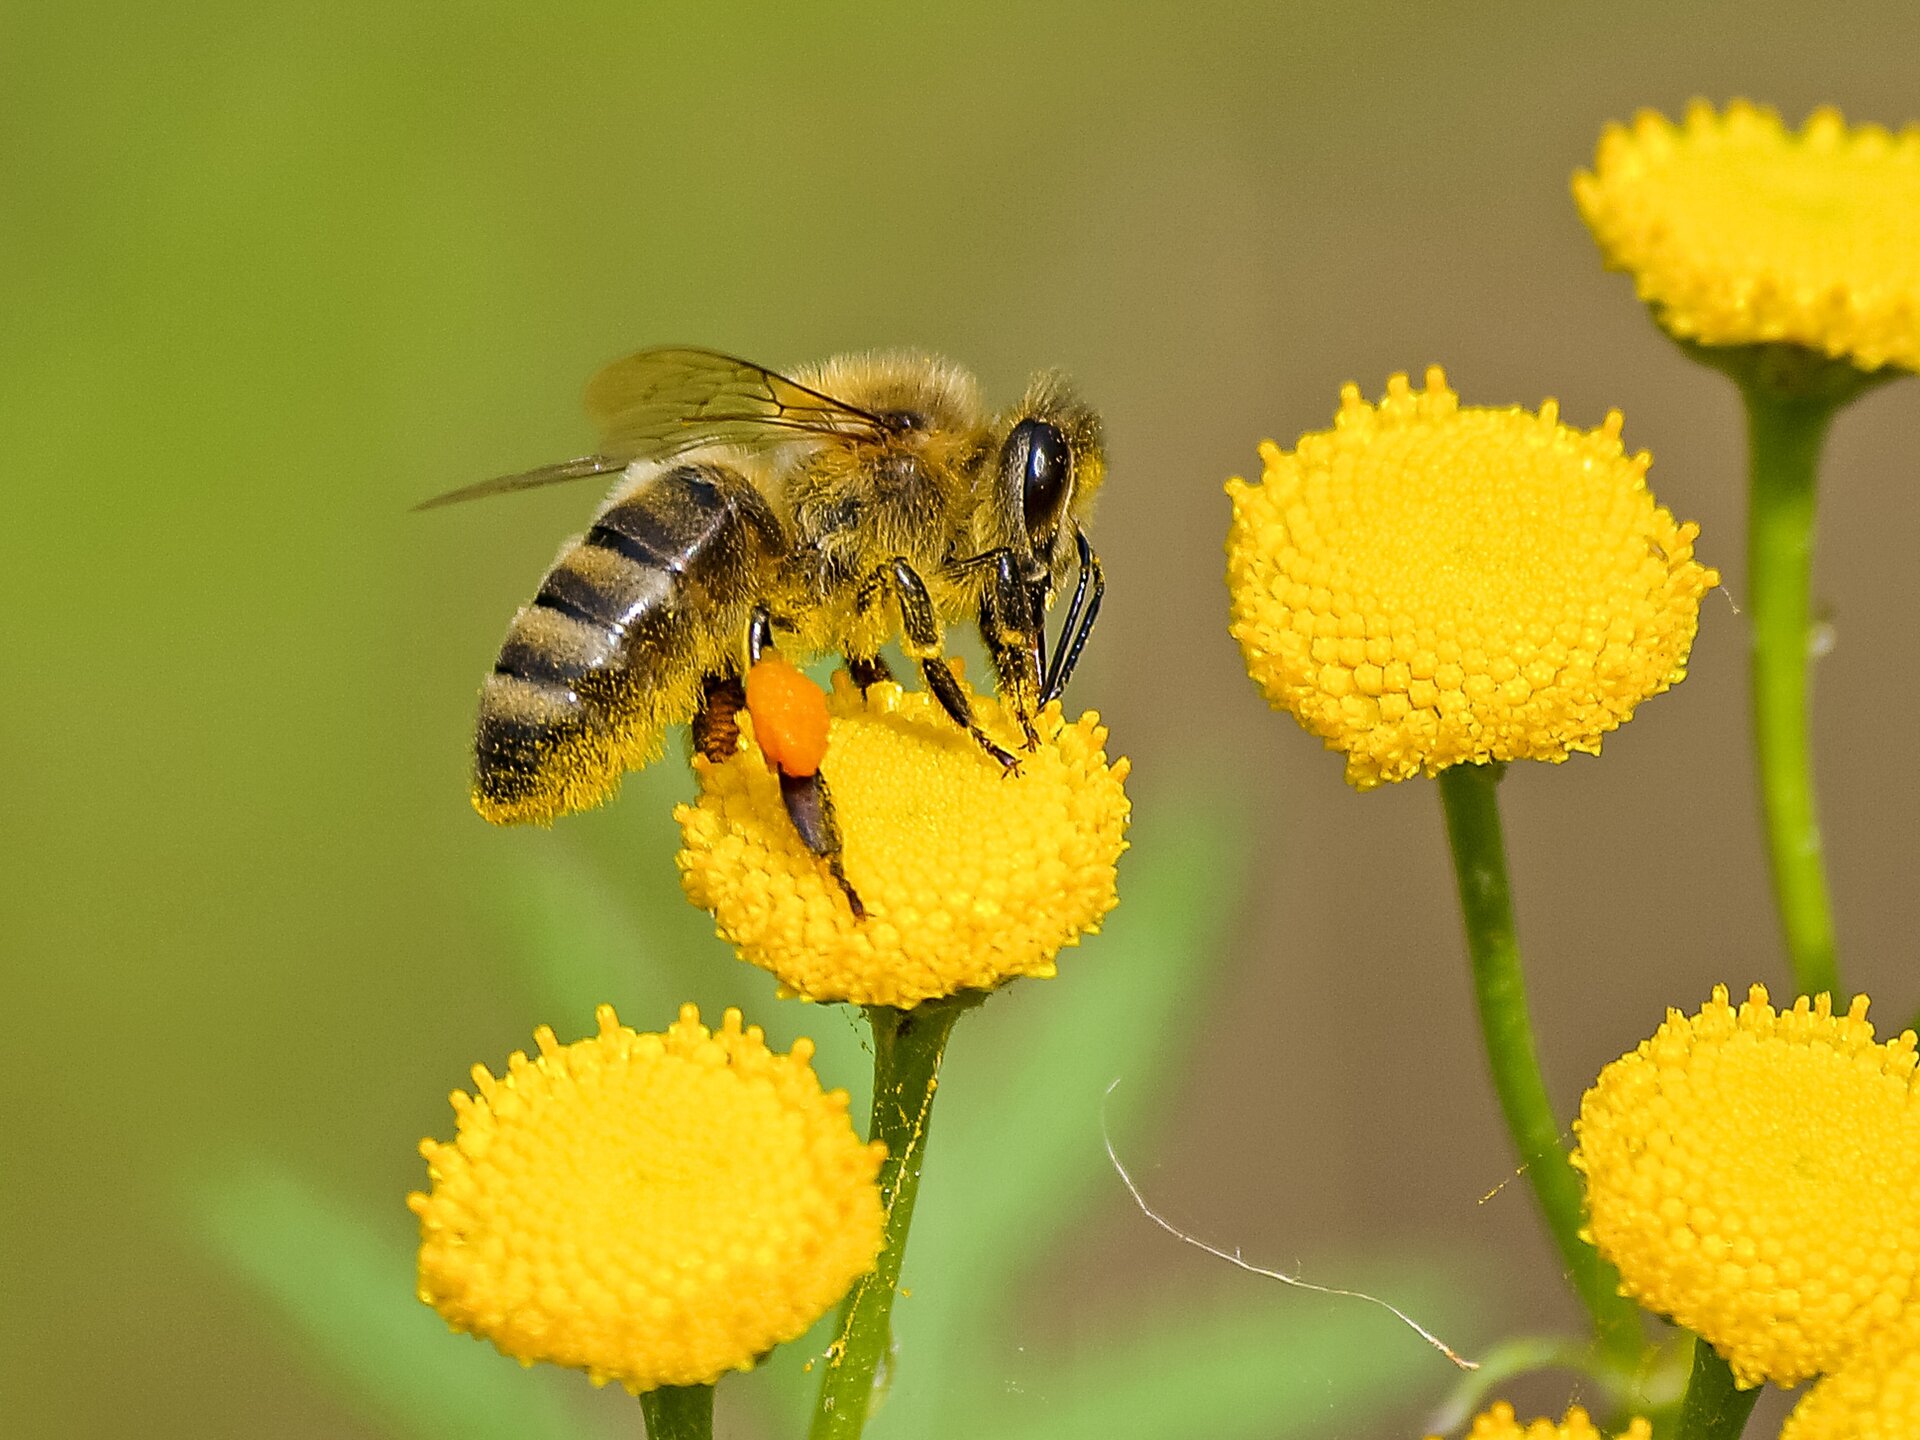 Zdjęcie przedstawia łąkę z żółtymi kwiatami oraz siedzącą pszczołę na jednym z nich. Na owadzie widoczny jest żółty pyłek a na jednym odnóżu przylepiona jest żółta kulka z pyłku kwiatowego. 